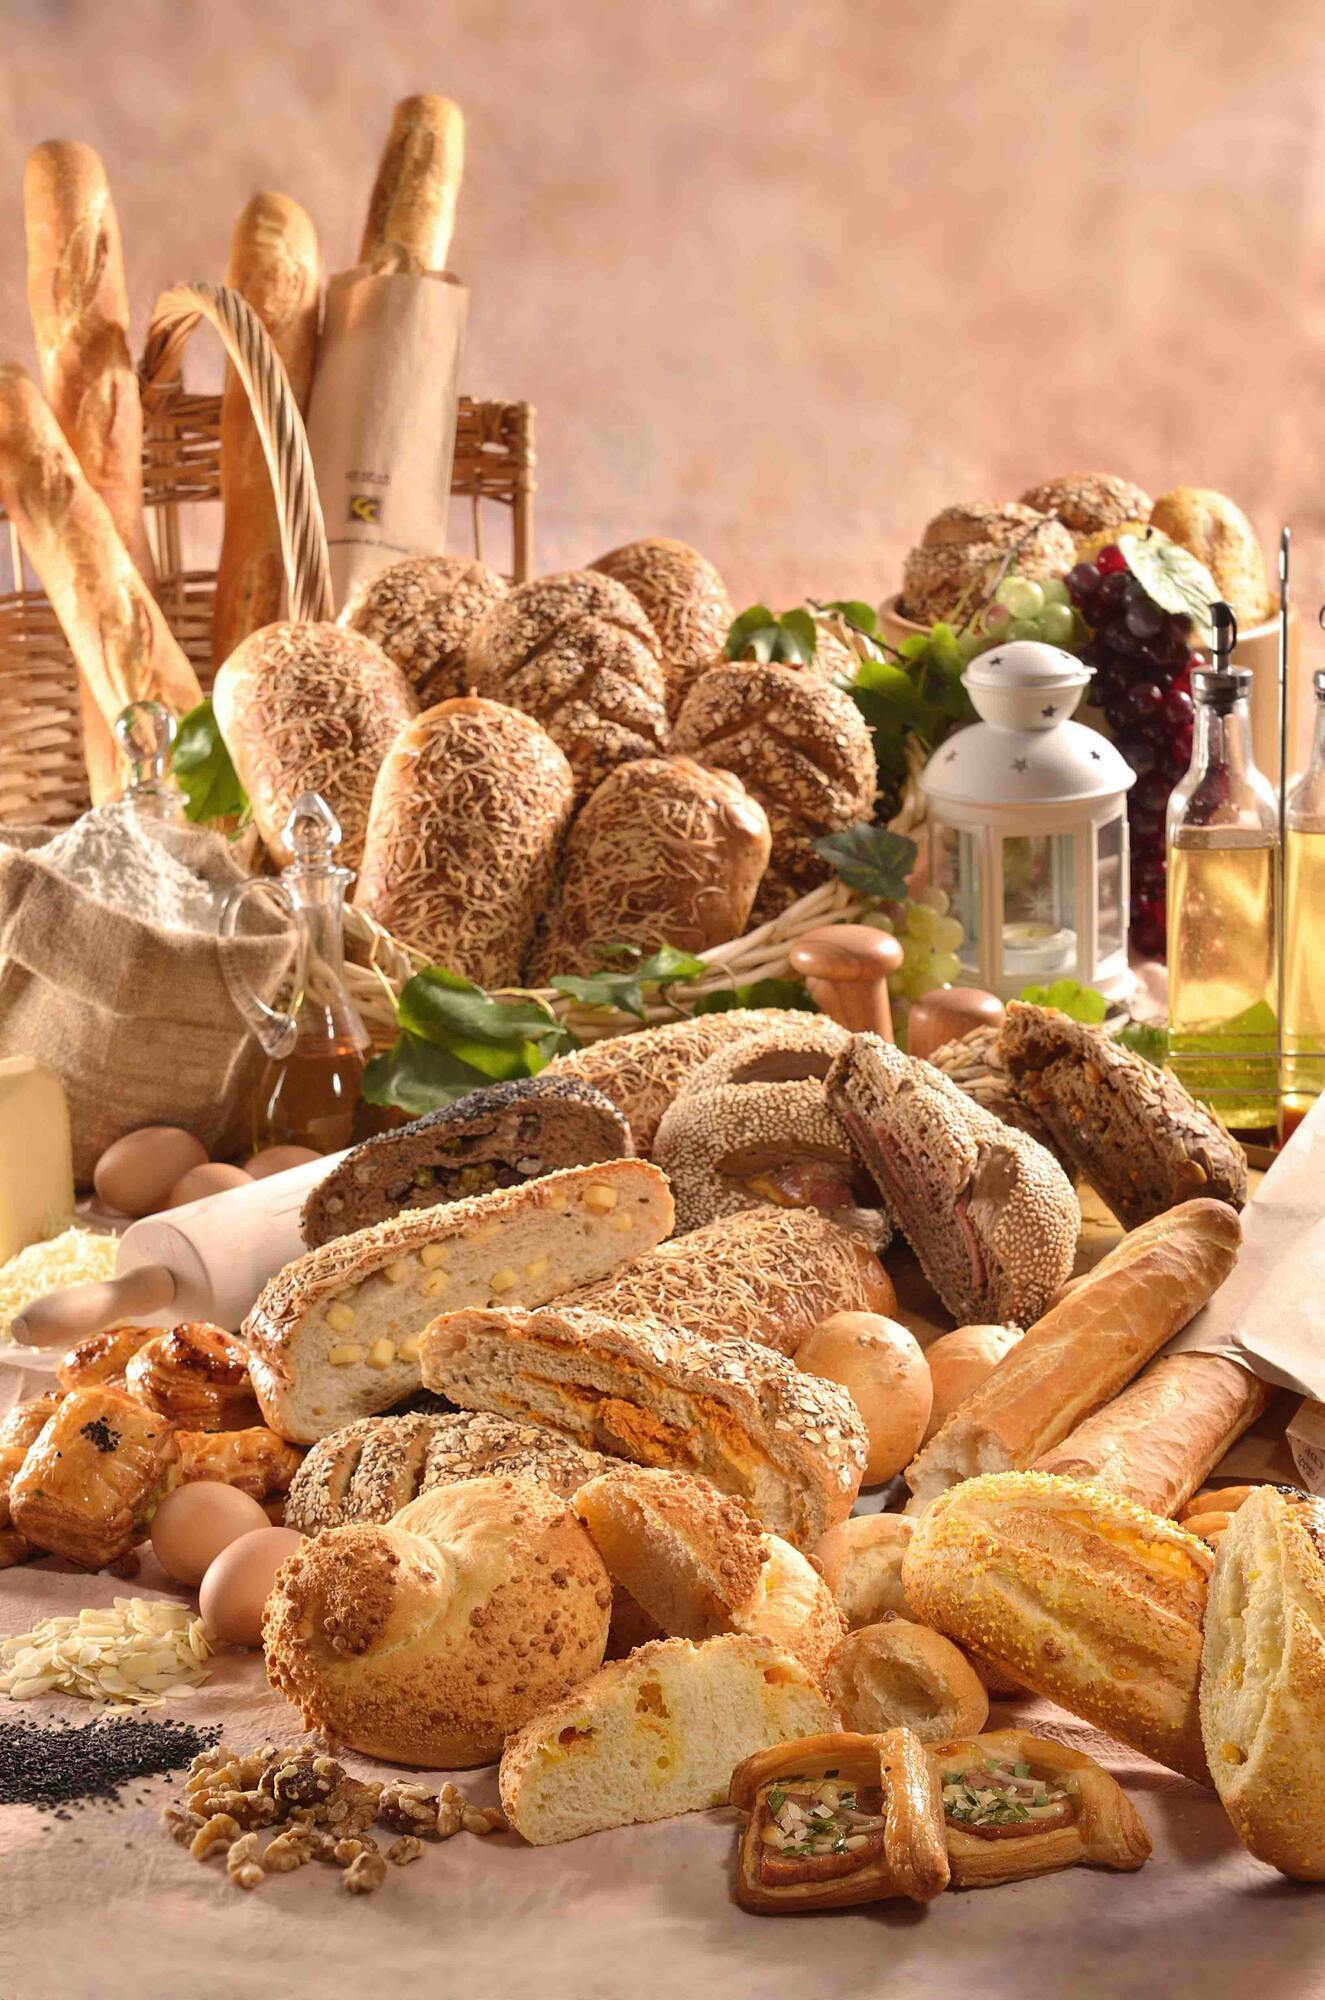 10 лучших низкокалорийных сортов хлеба по версии экспертов по питанию